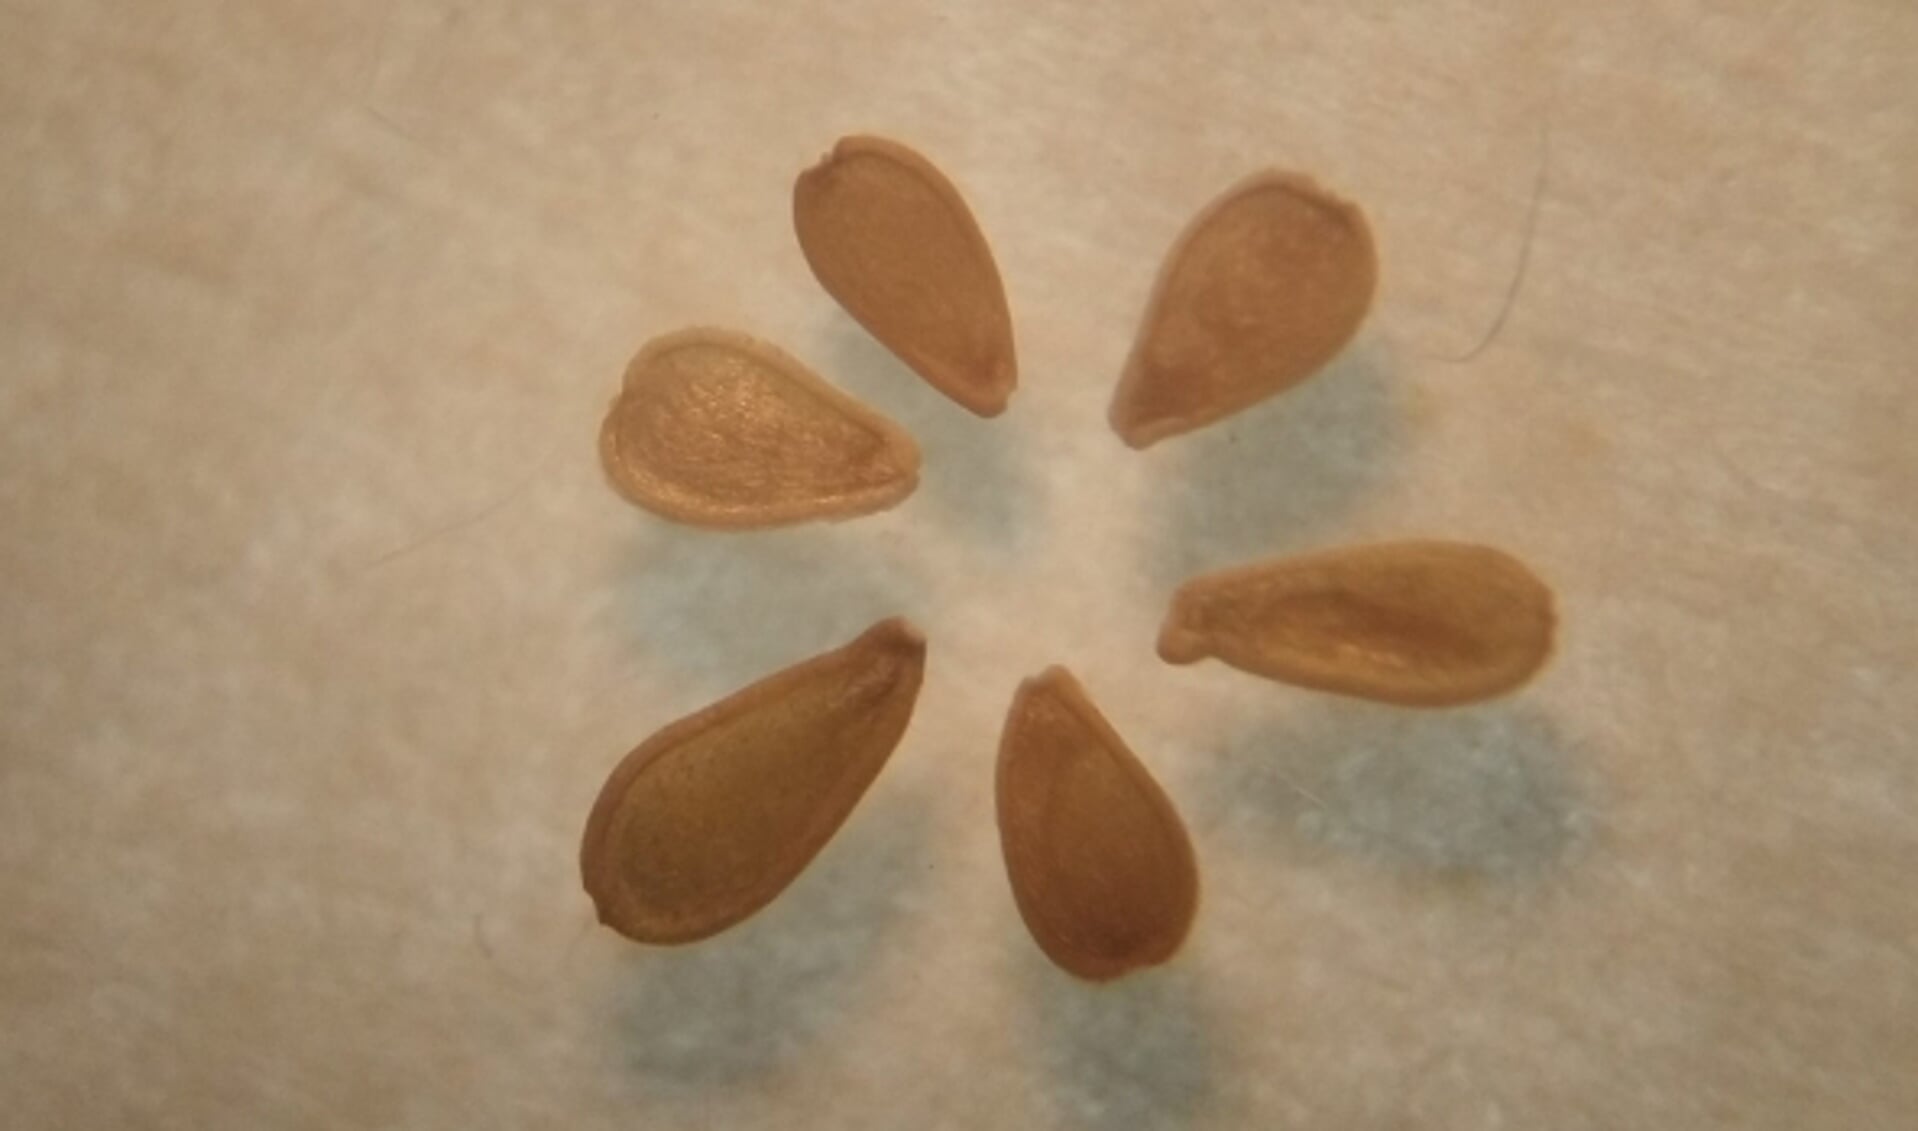 De zaden van madeliefjes zijn circa 1,5 millimeter lang. (Foto: Marieke Elfferich)